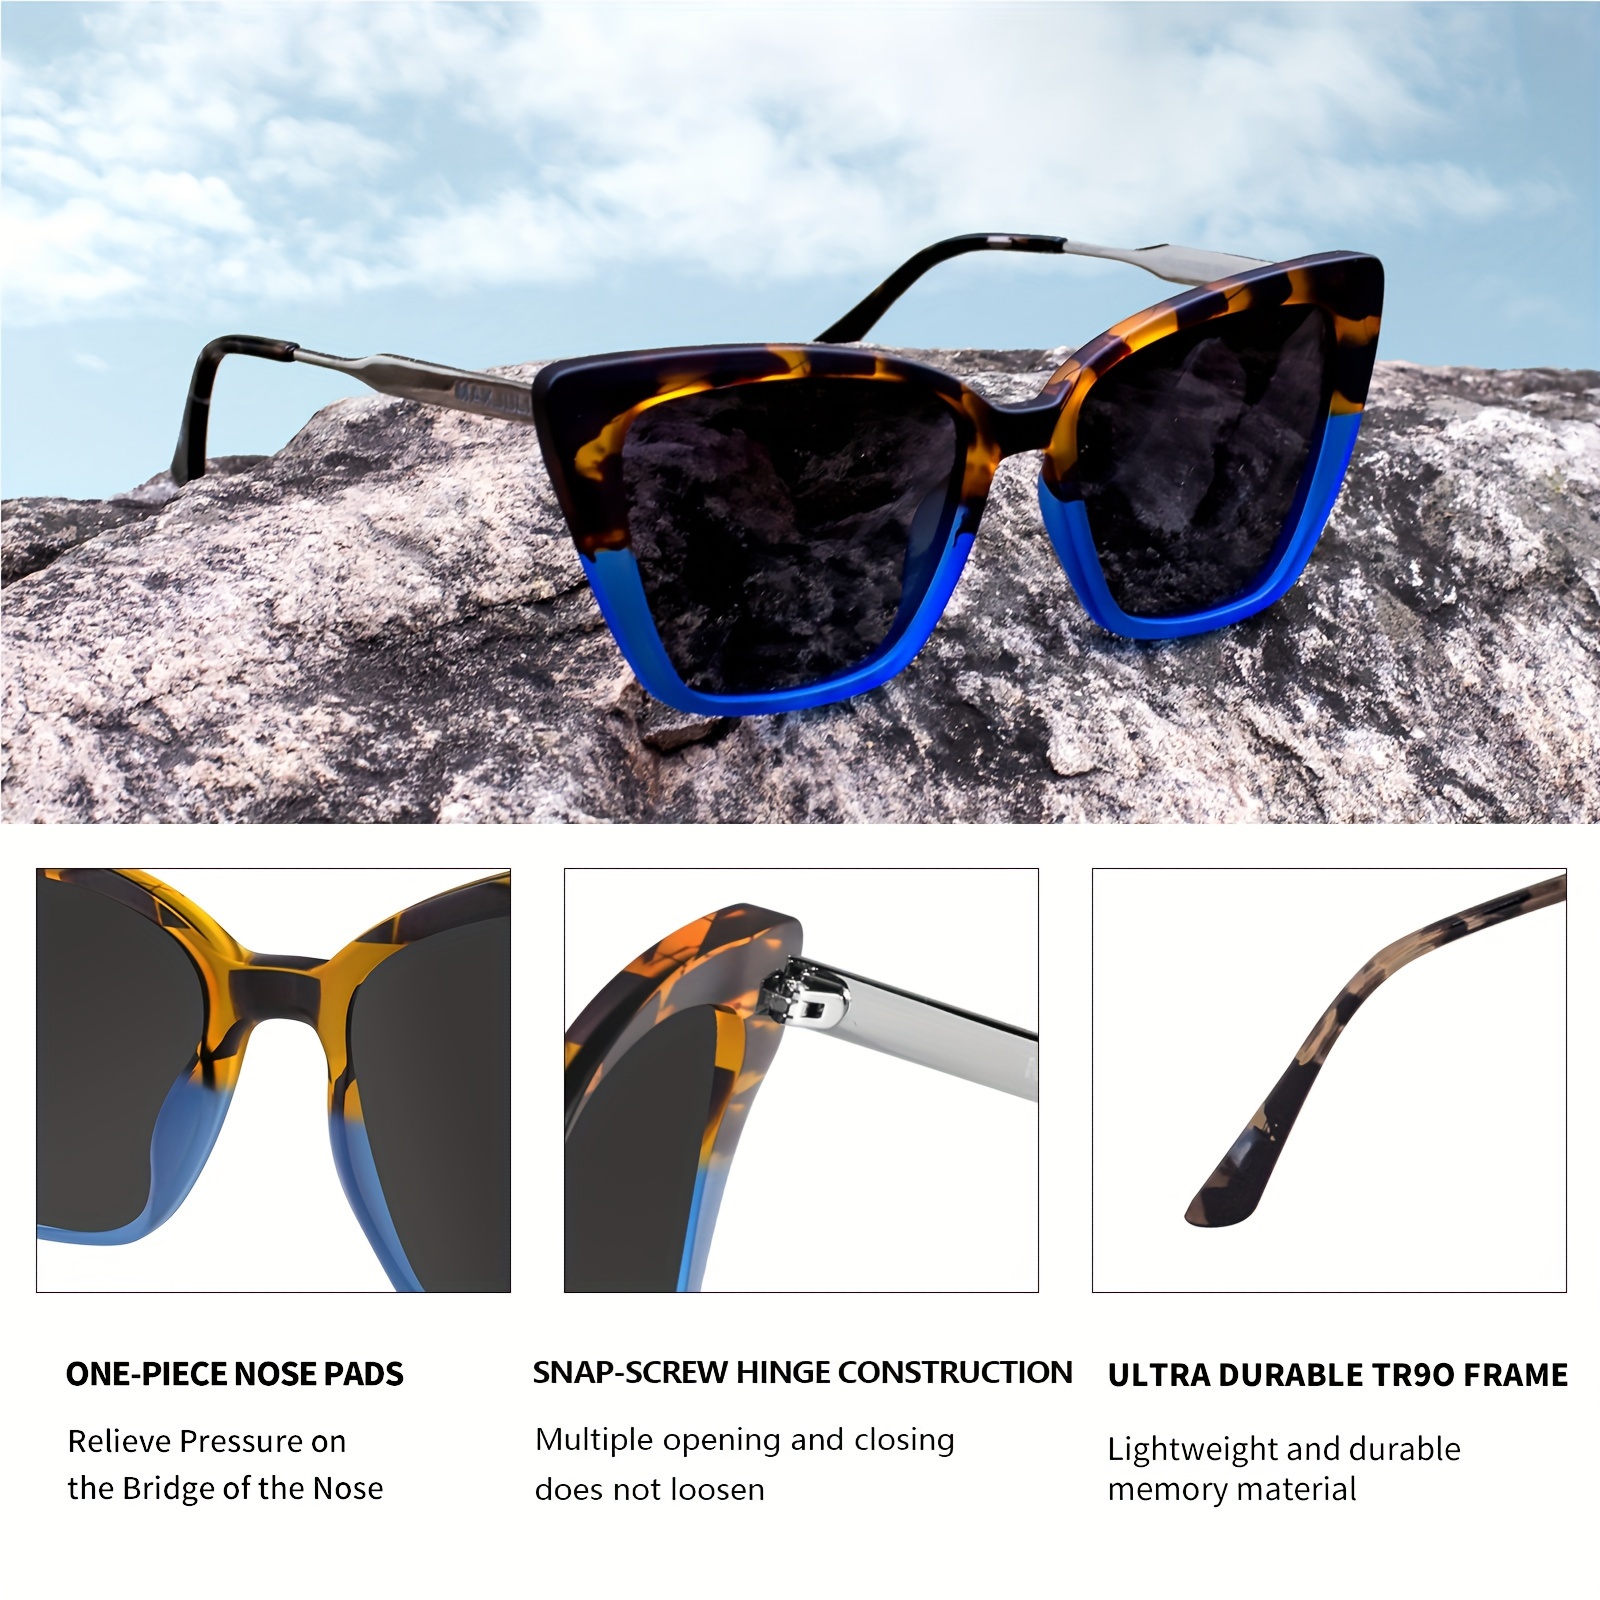 Sunglasses for Men Travel Sun Glasses Blue / MULTI